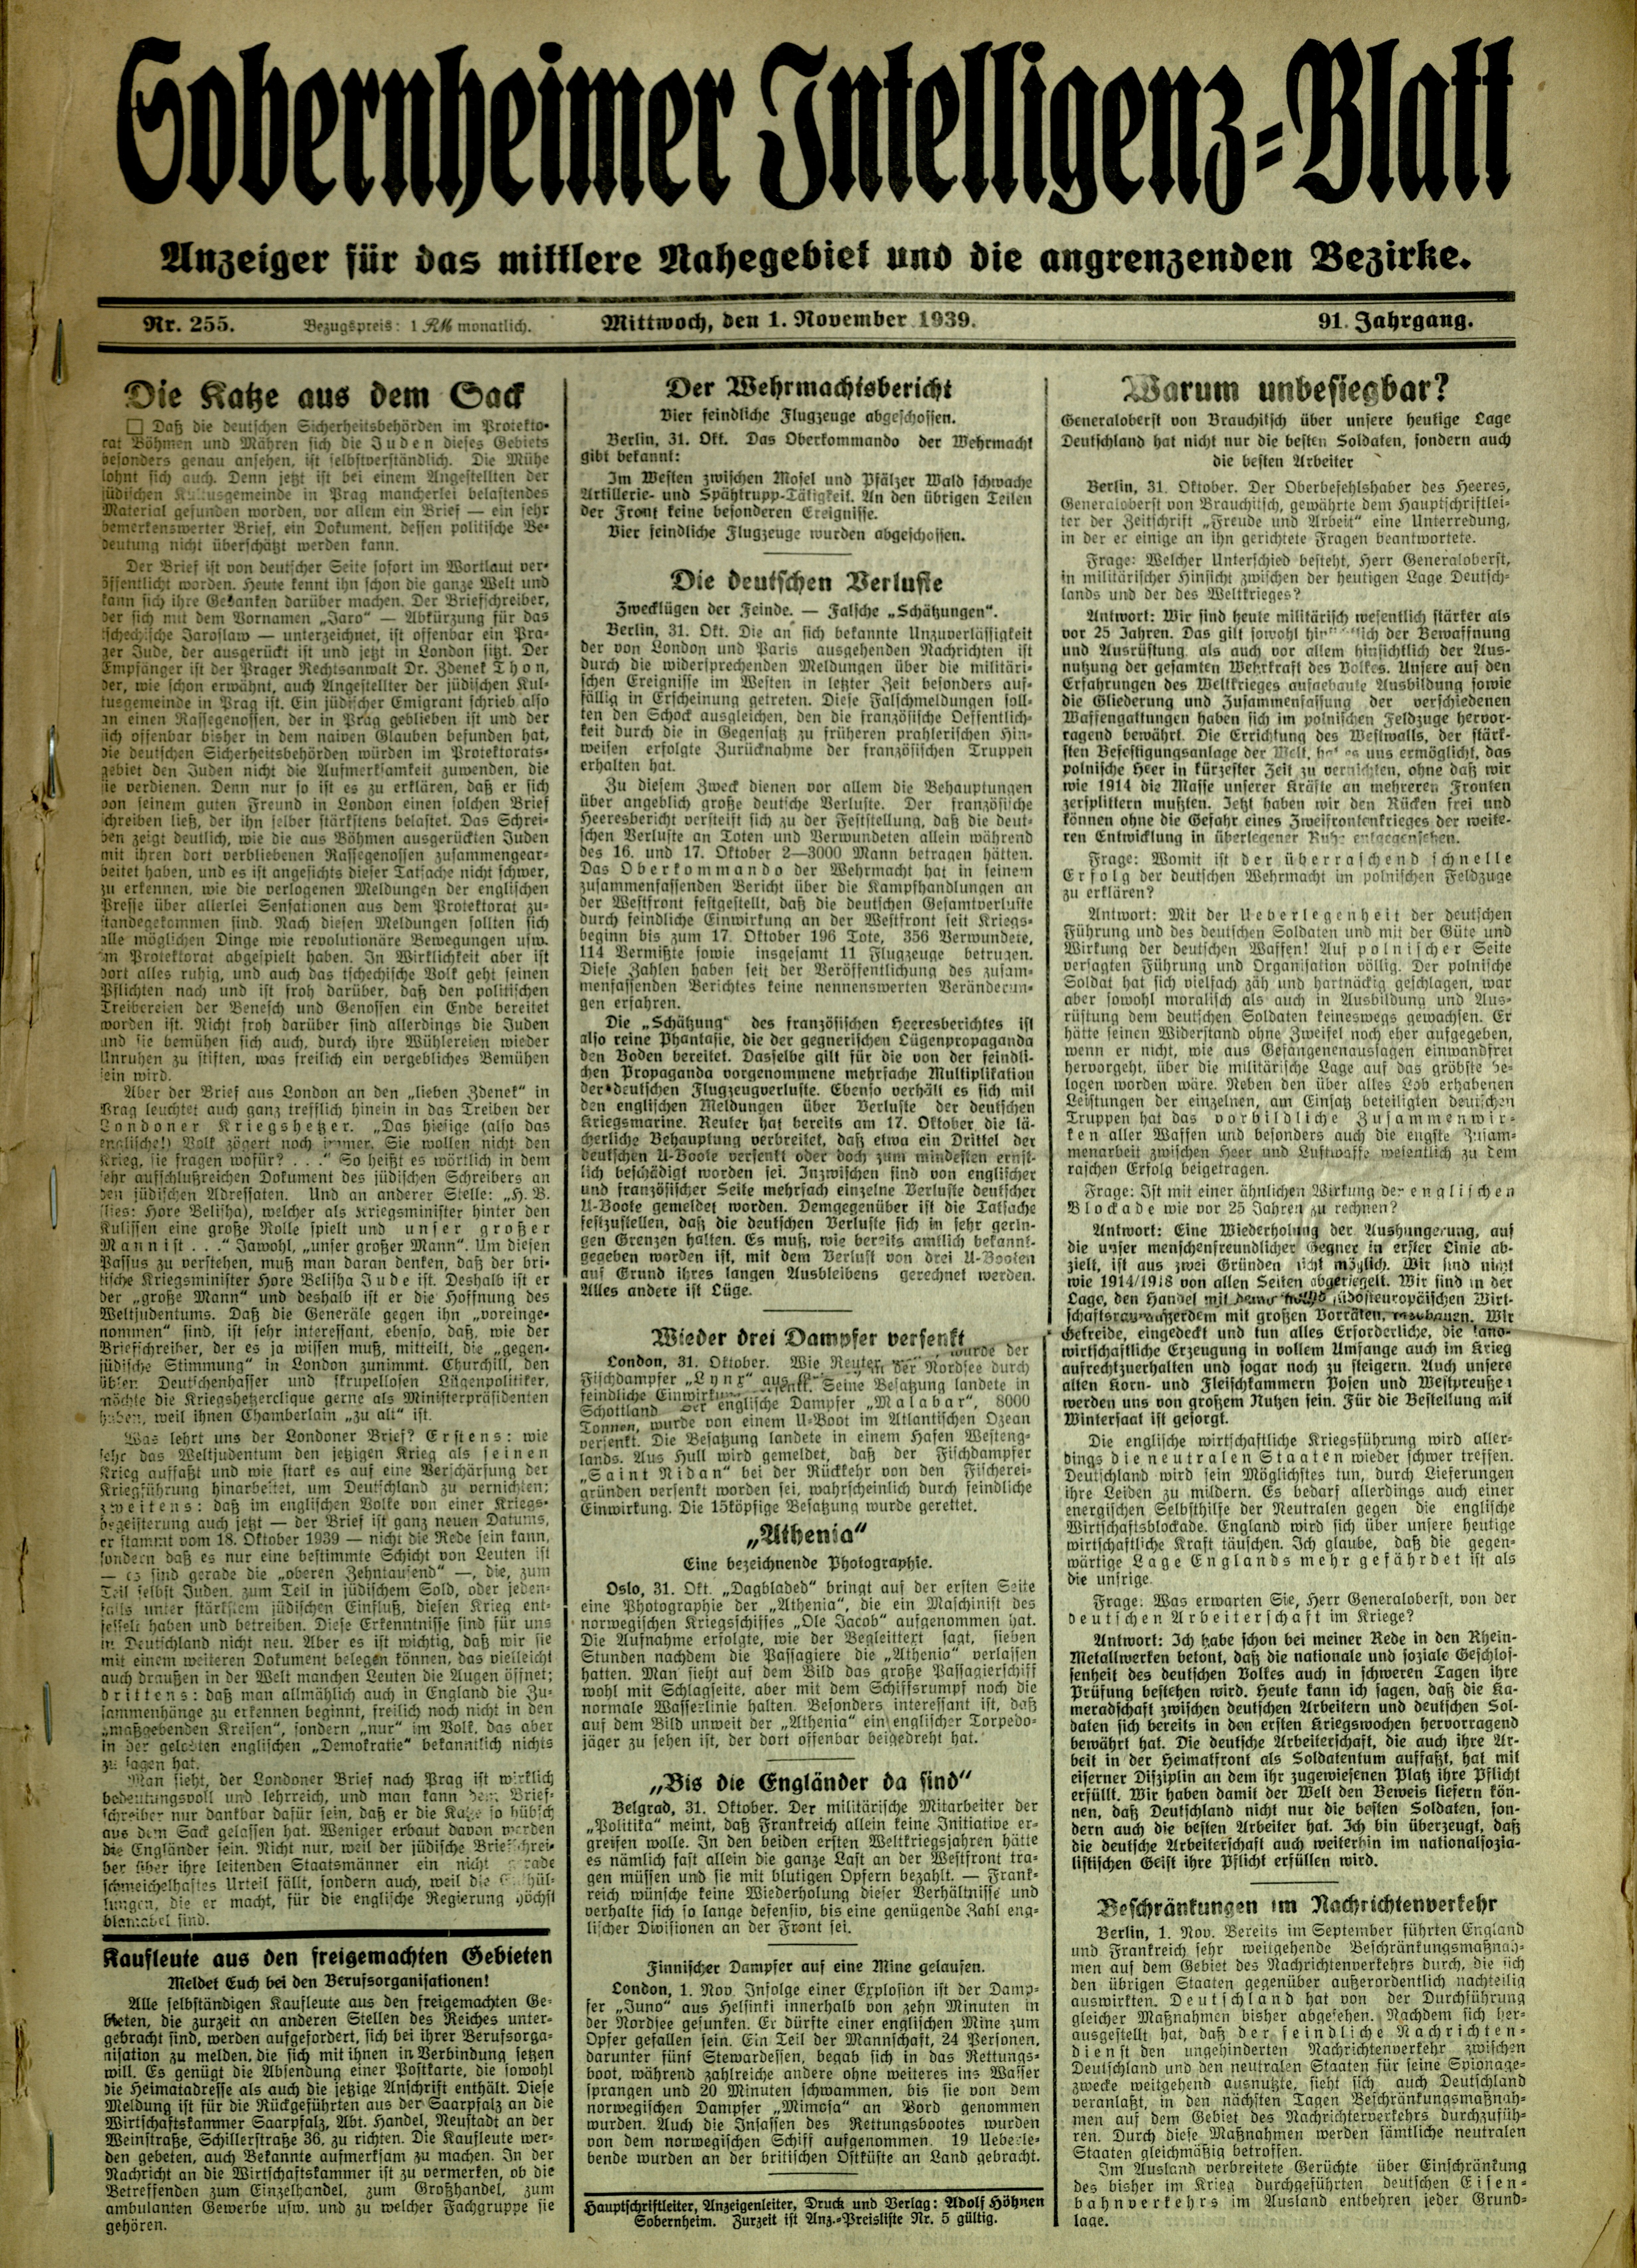 Zeitung: Sobernheimer Intelligenzblatt; November 1939, Jg. 90 Nr. 255 (Heimatmuseum Bad Sobernheim CC BY-NC-SA)